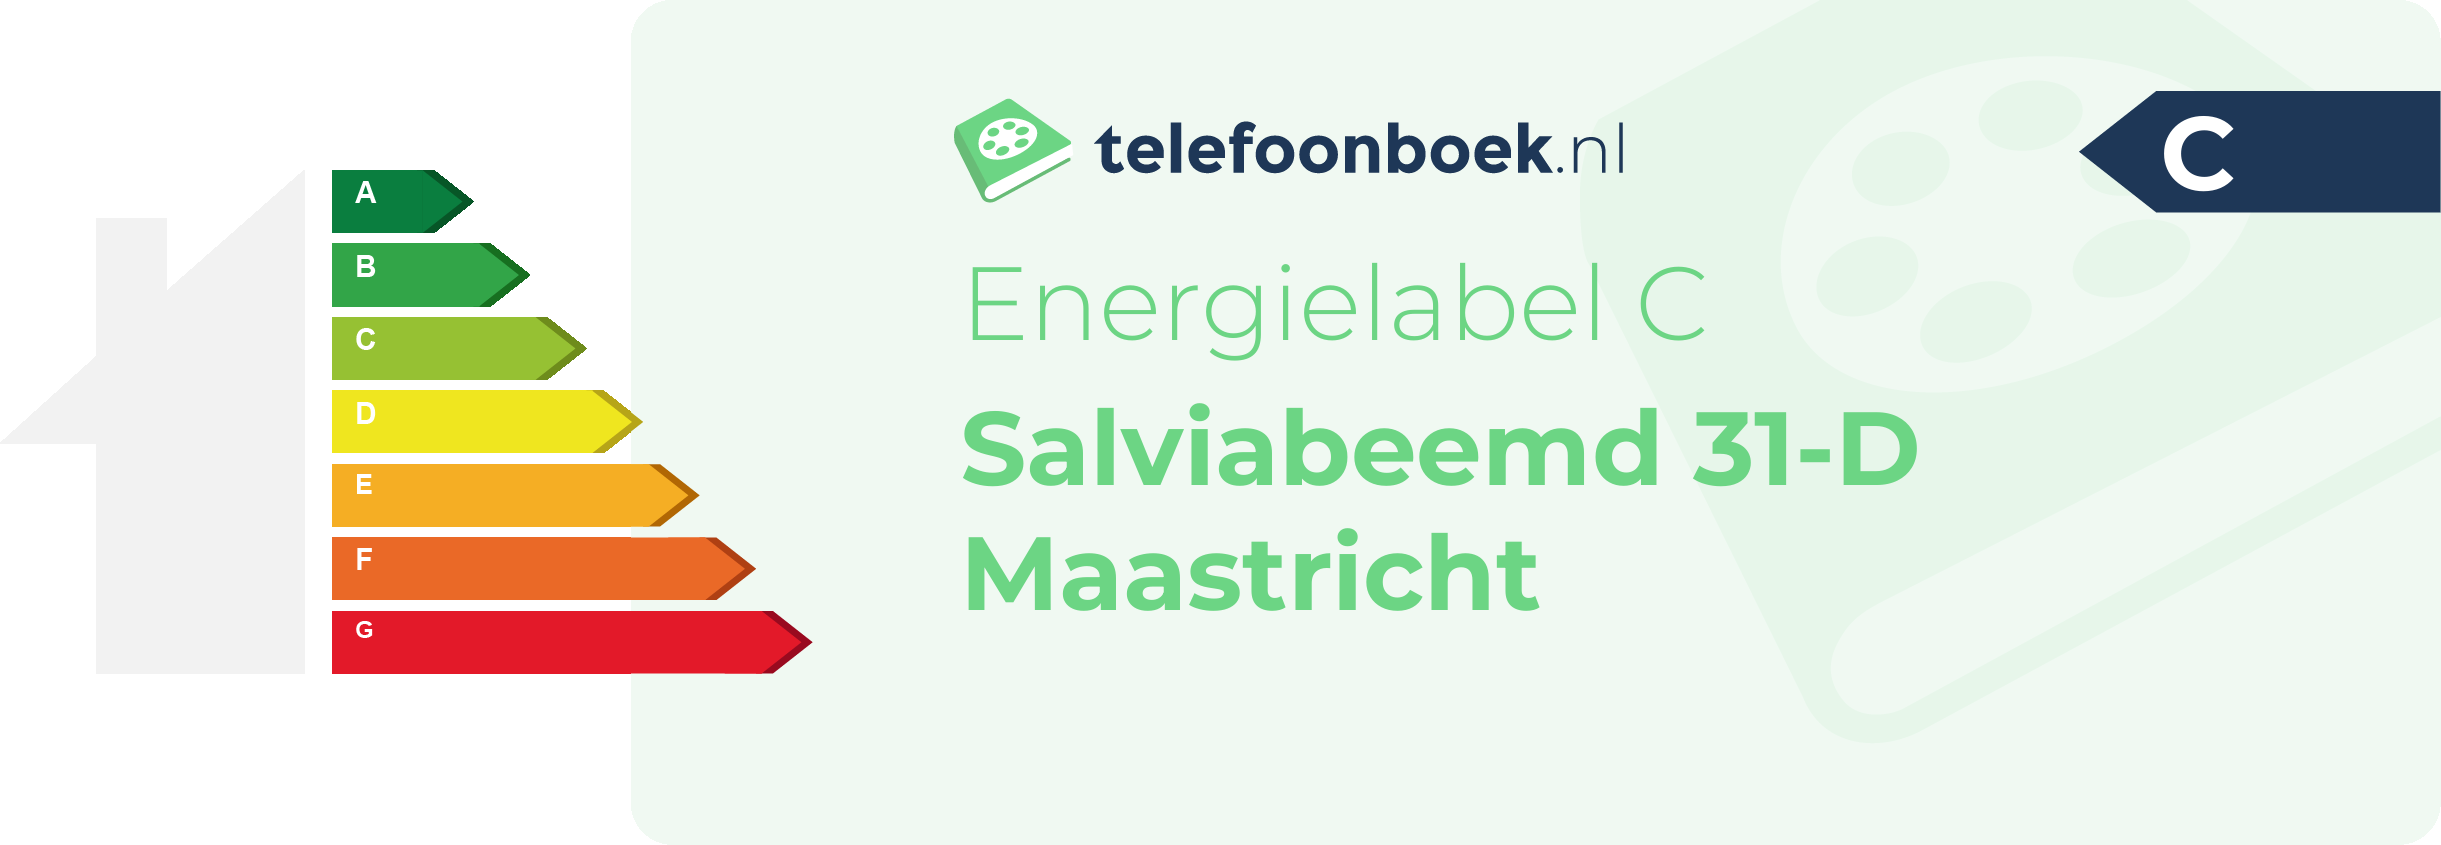 Energielabel Salviabeemd 31-D Maastricht